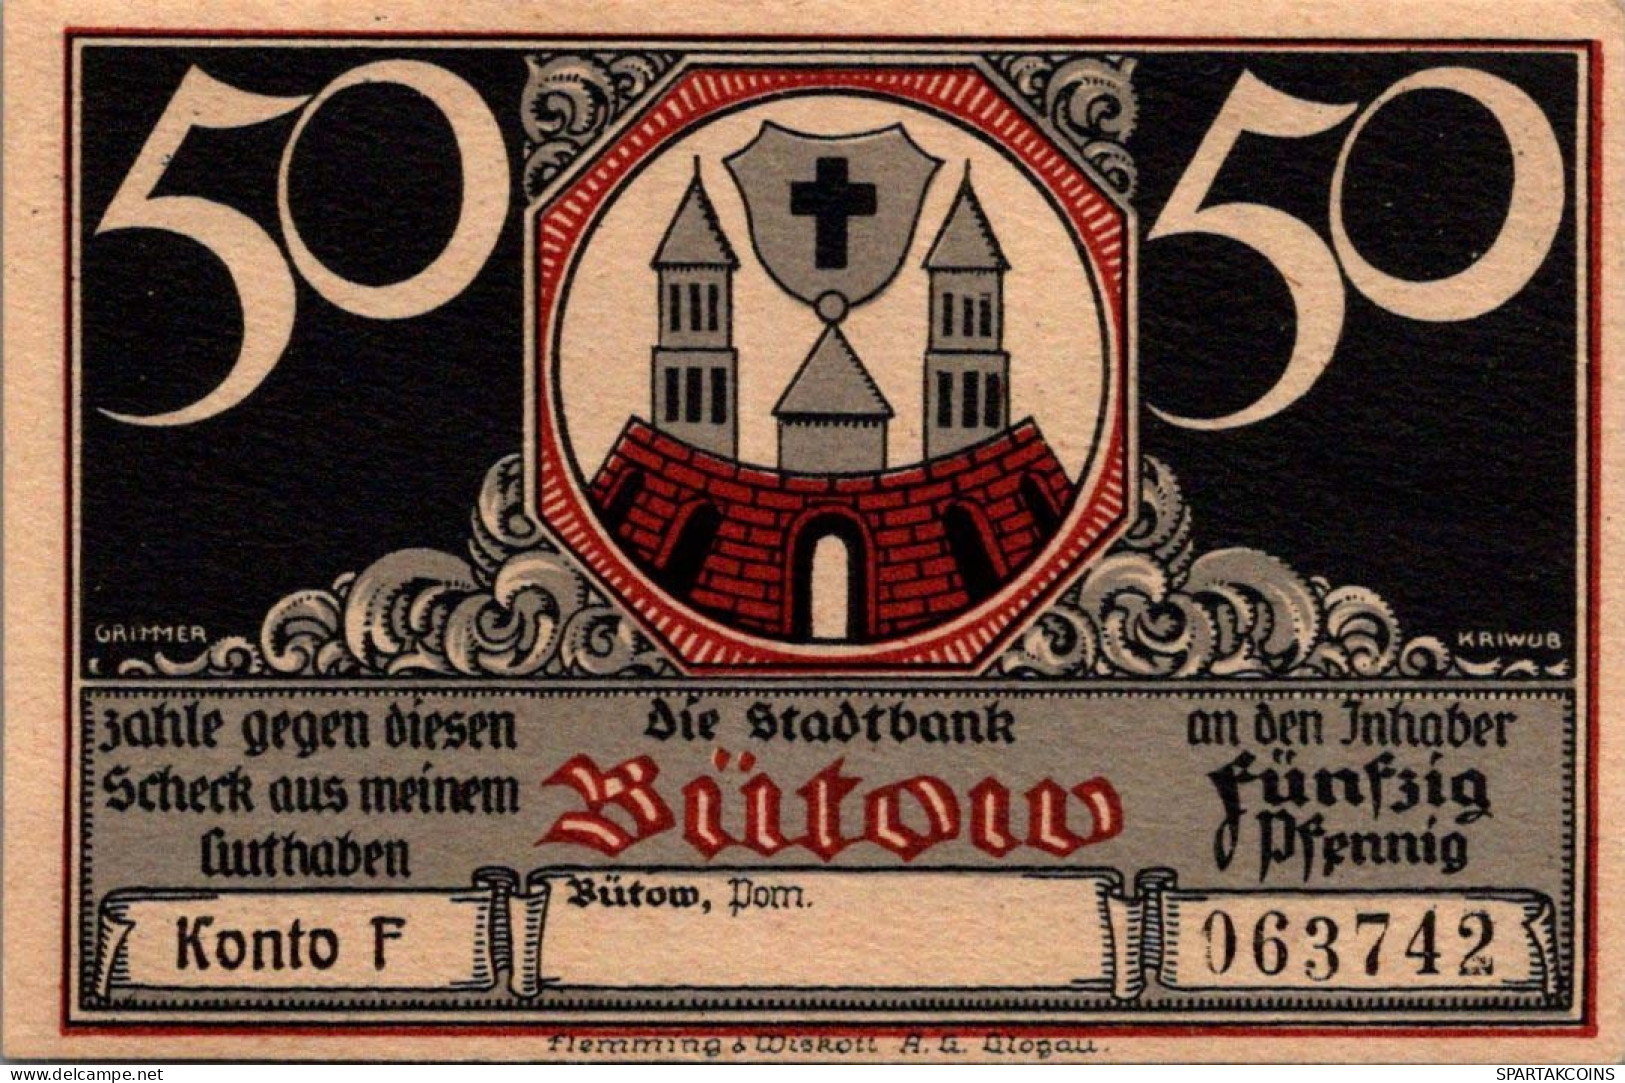 50 PFENNIG 1922 Stadt BÜTOW Pomerania UNC DEUTSCHLAND Notgeld Banknote #PC887 - [11] Local Banknote Issues